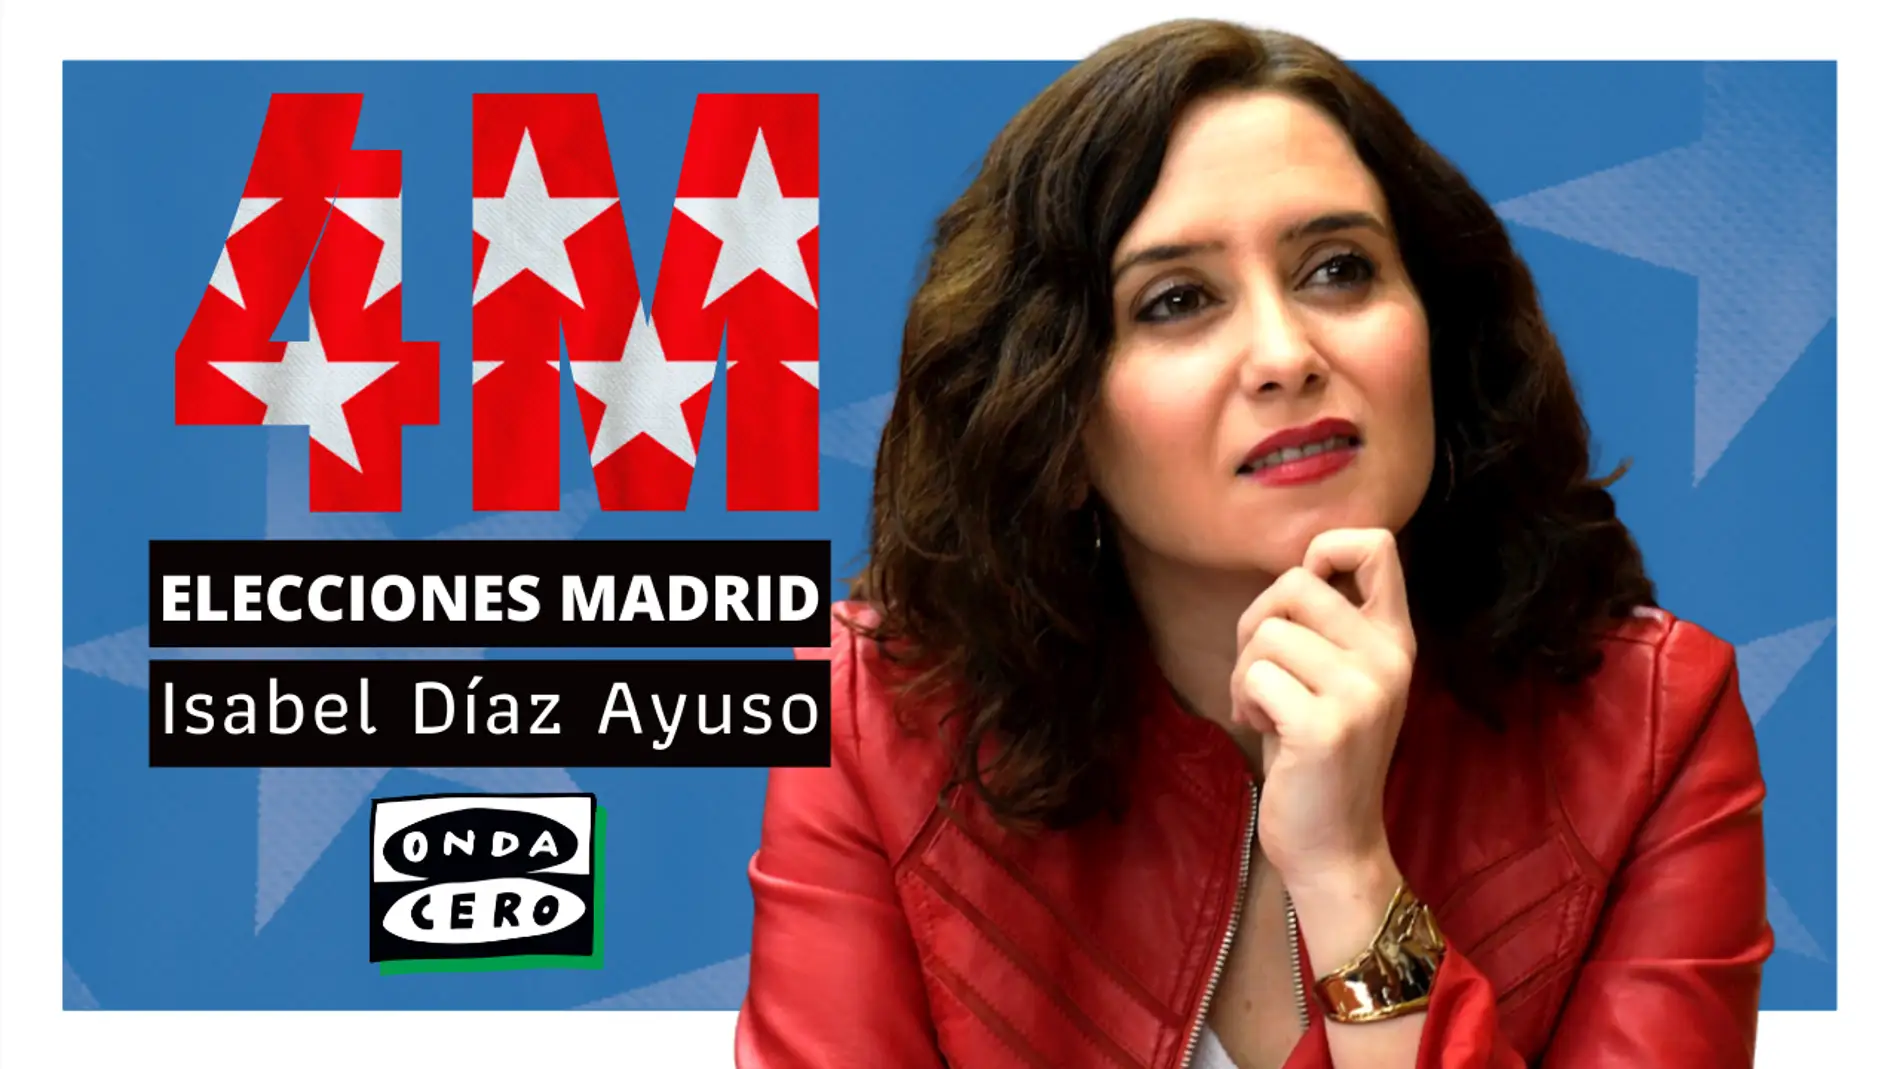 Así es Isabel Díaz Ayuso, la líder del Partido Popular en Madrid